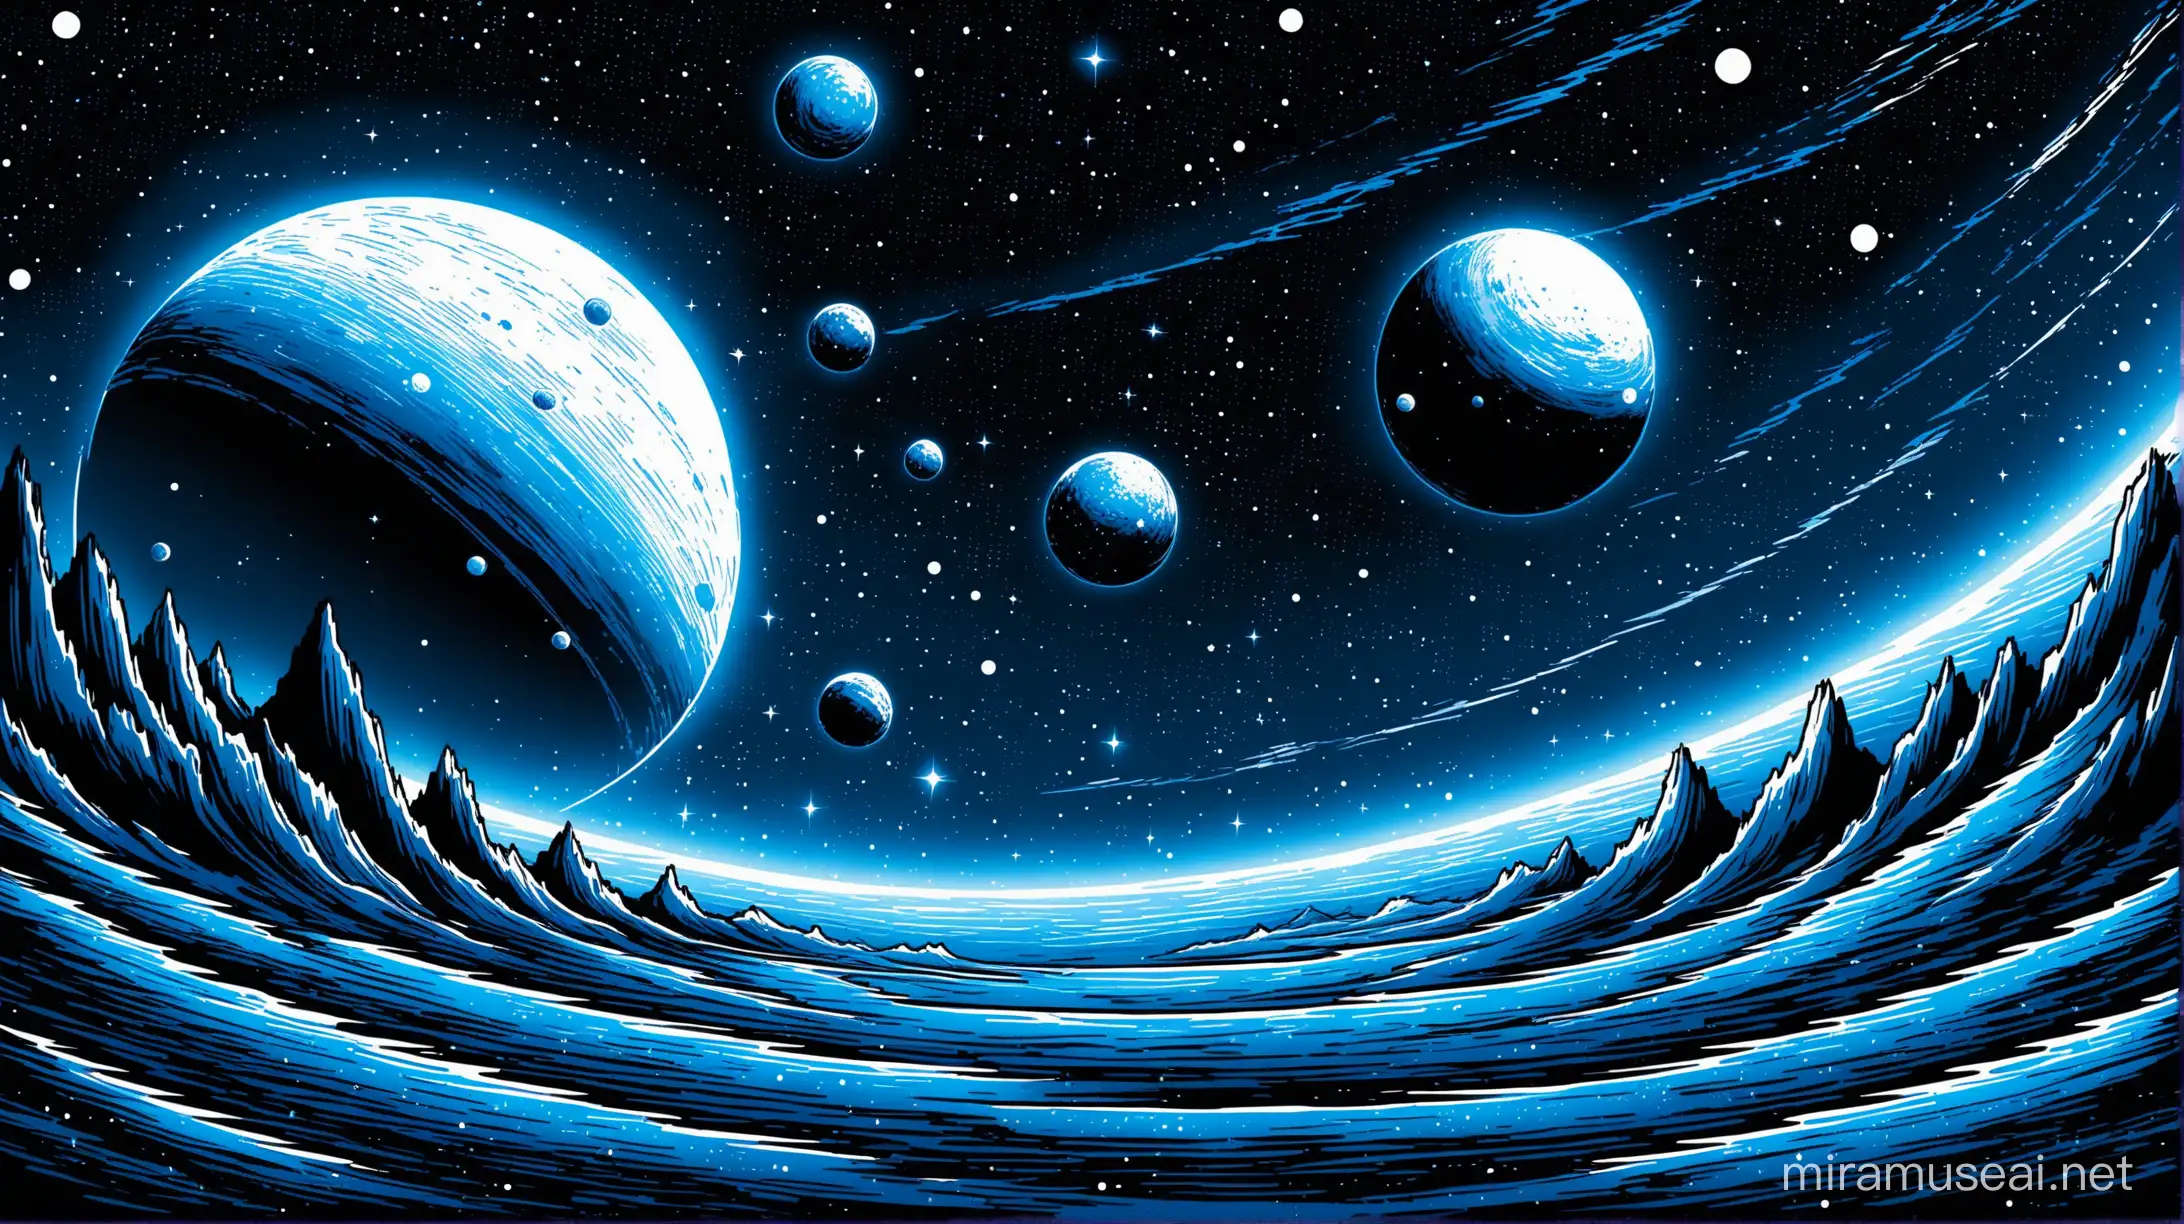 малюнок простого фантастичного пейзажу космосу сині, білі чорні кольори